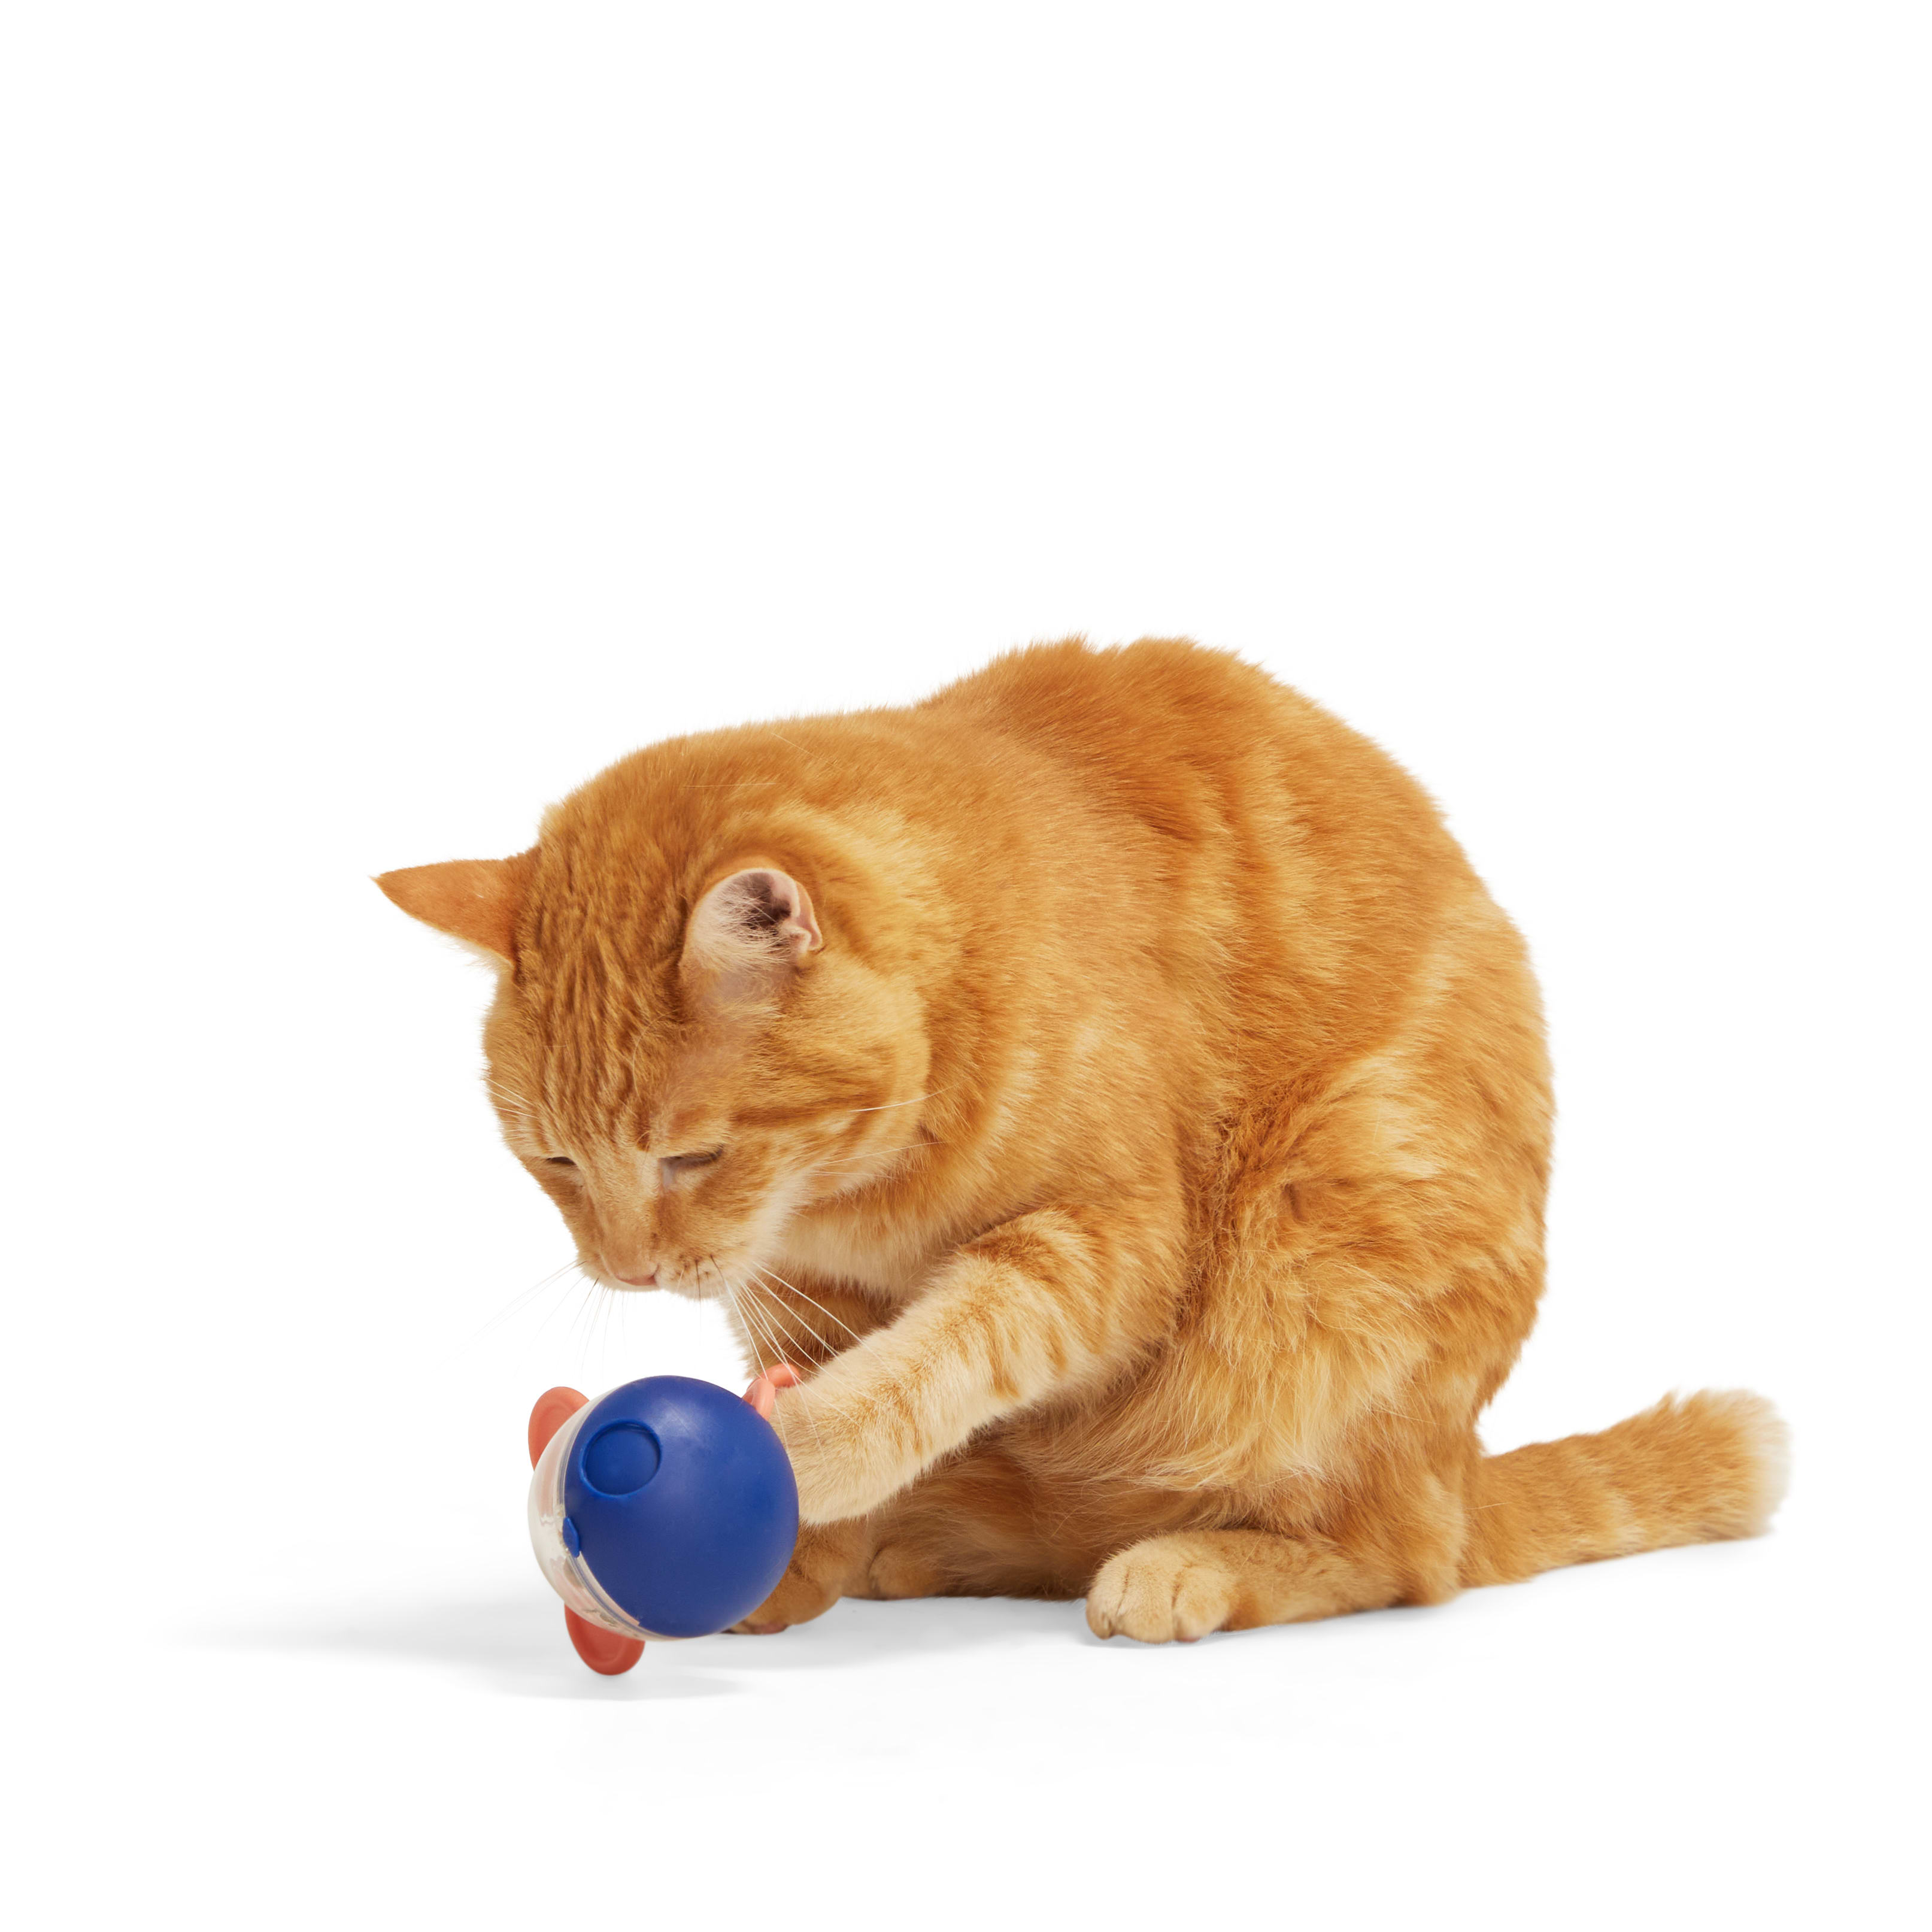 Interactive Treat Dispenser Cat Toy – Pet's Satisfaction